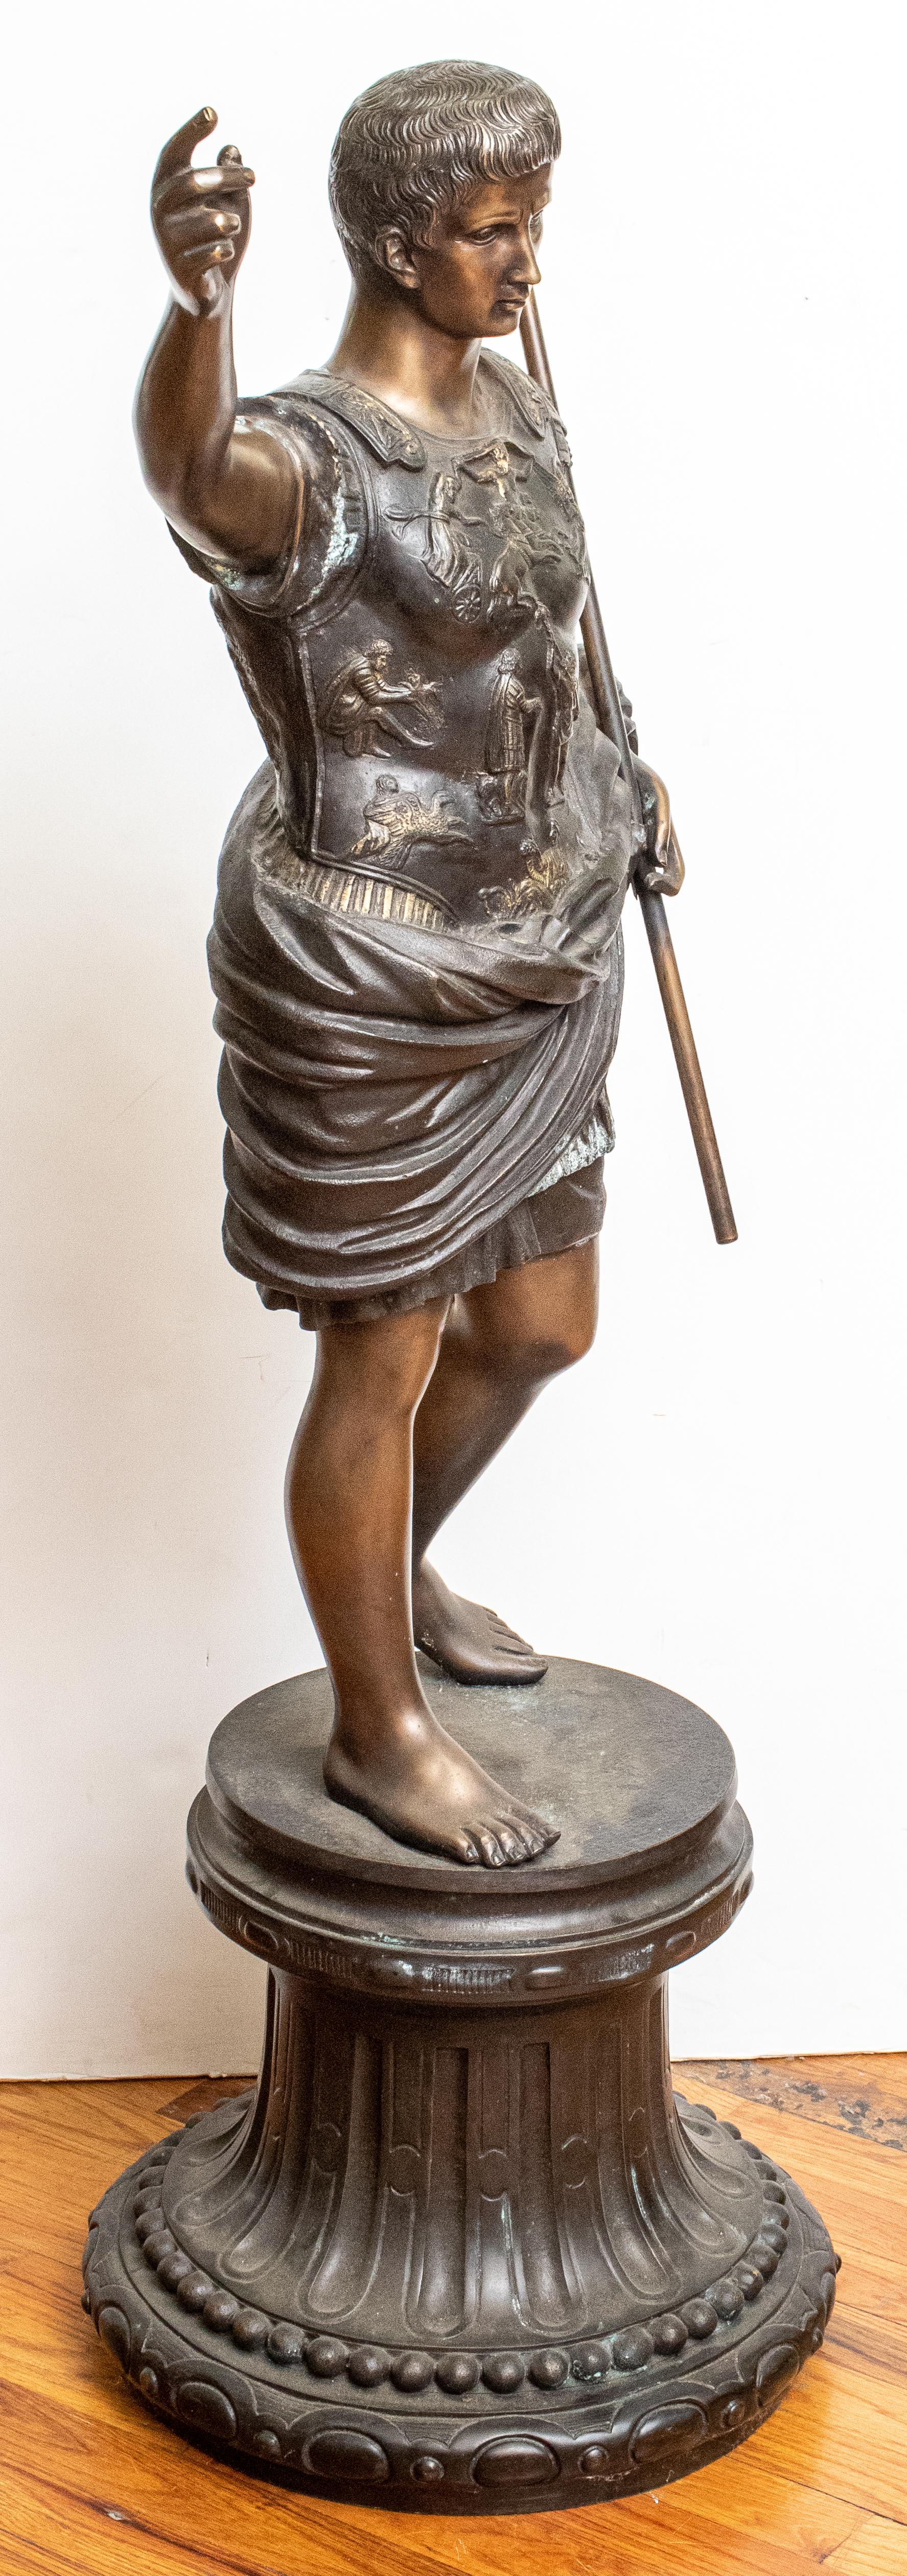 julius cesar statue